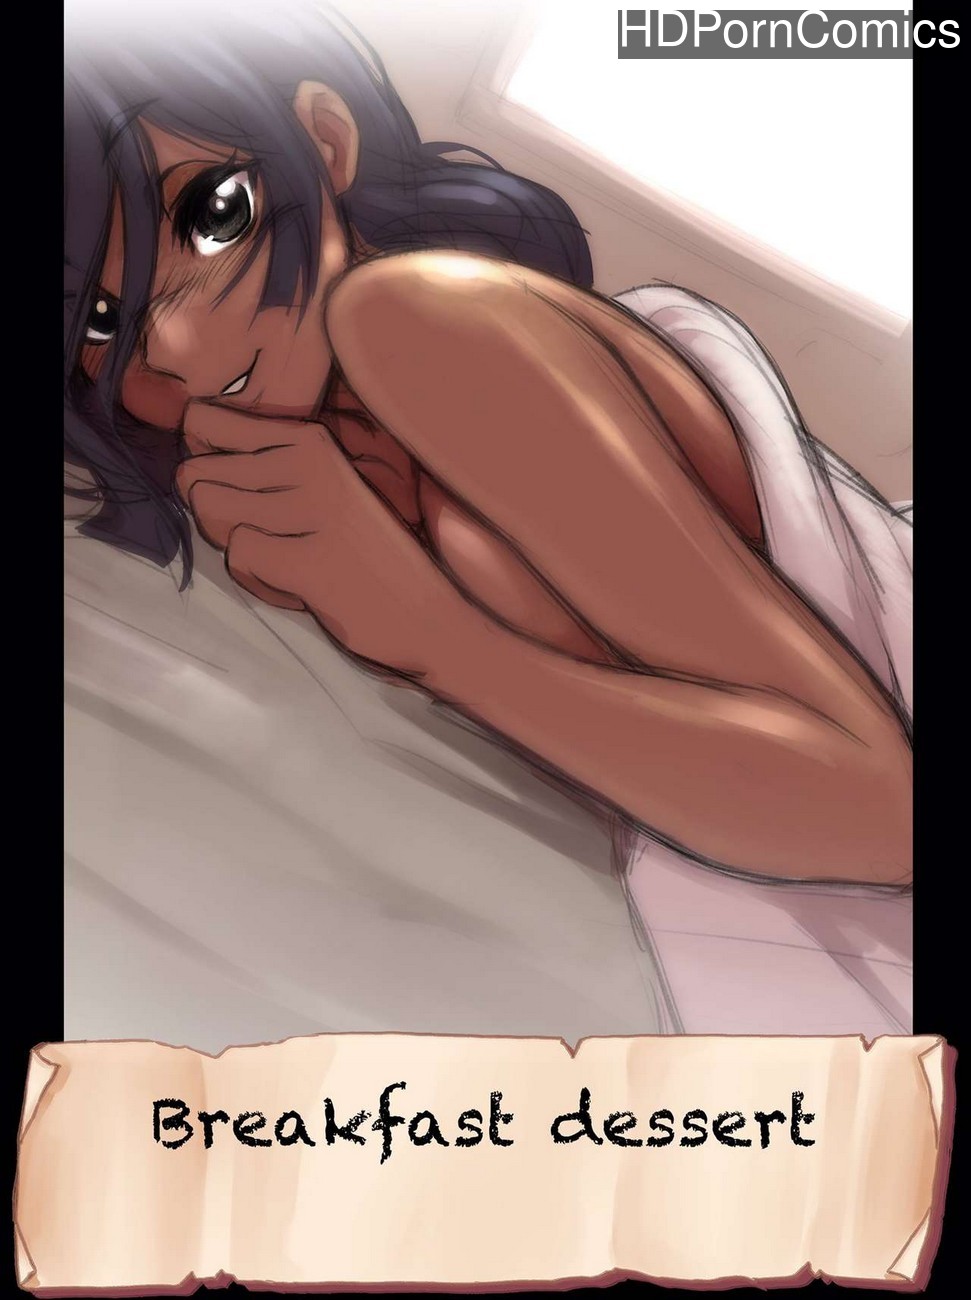 Porn Faqing - Breakfast Dessert comic porn | HD Porn Comics